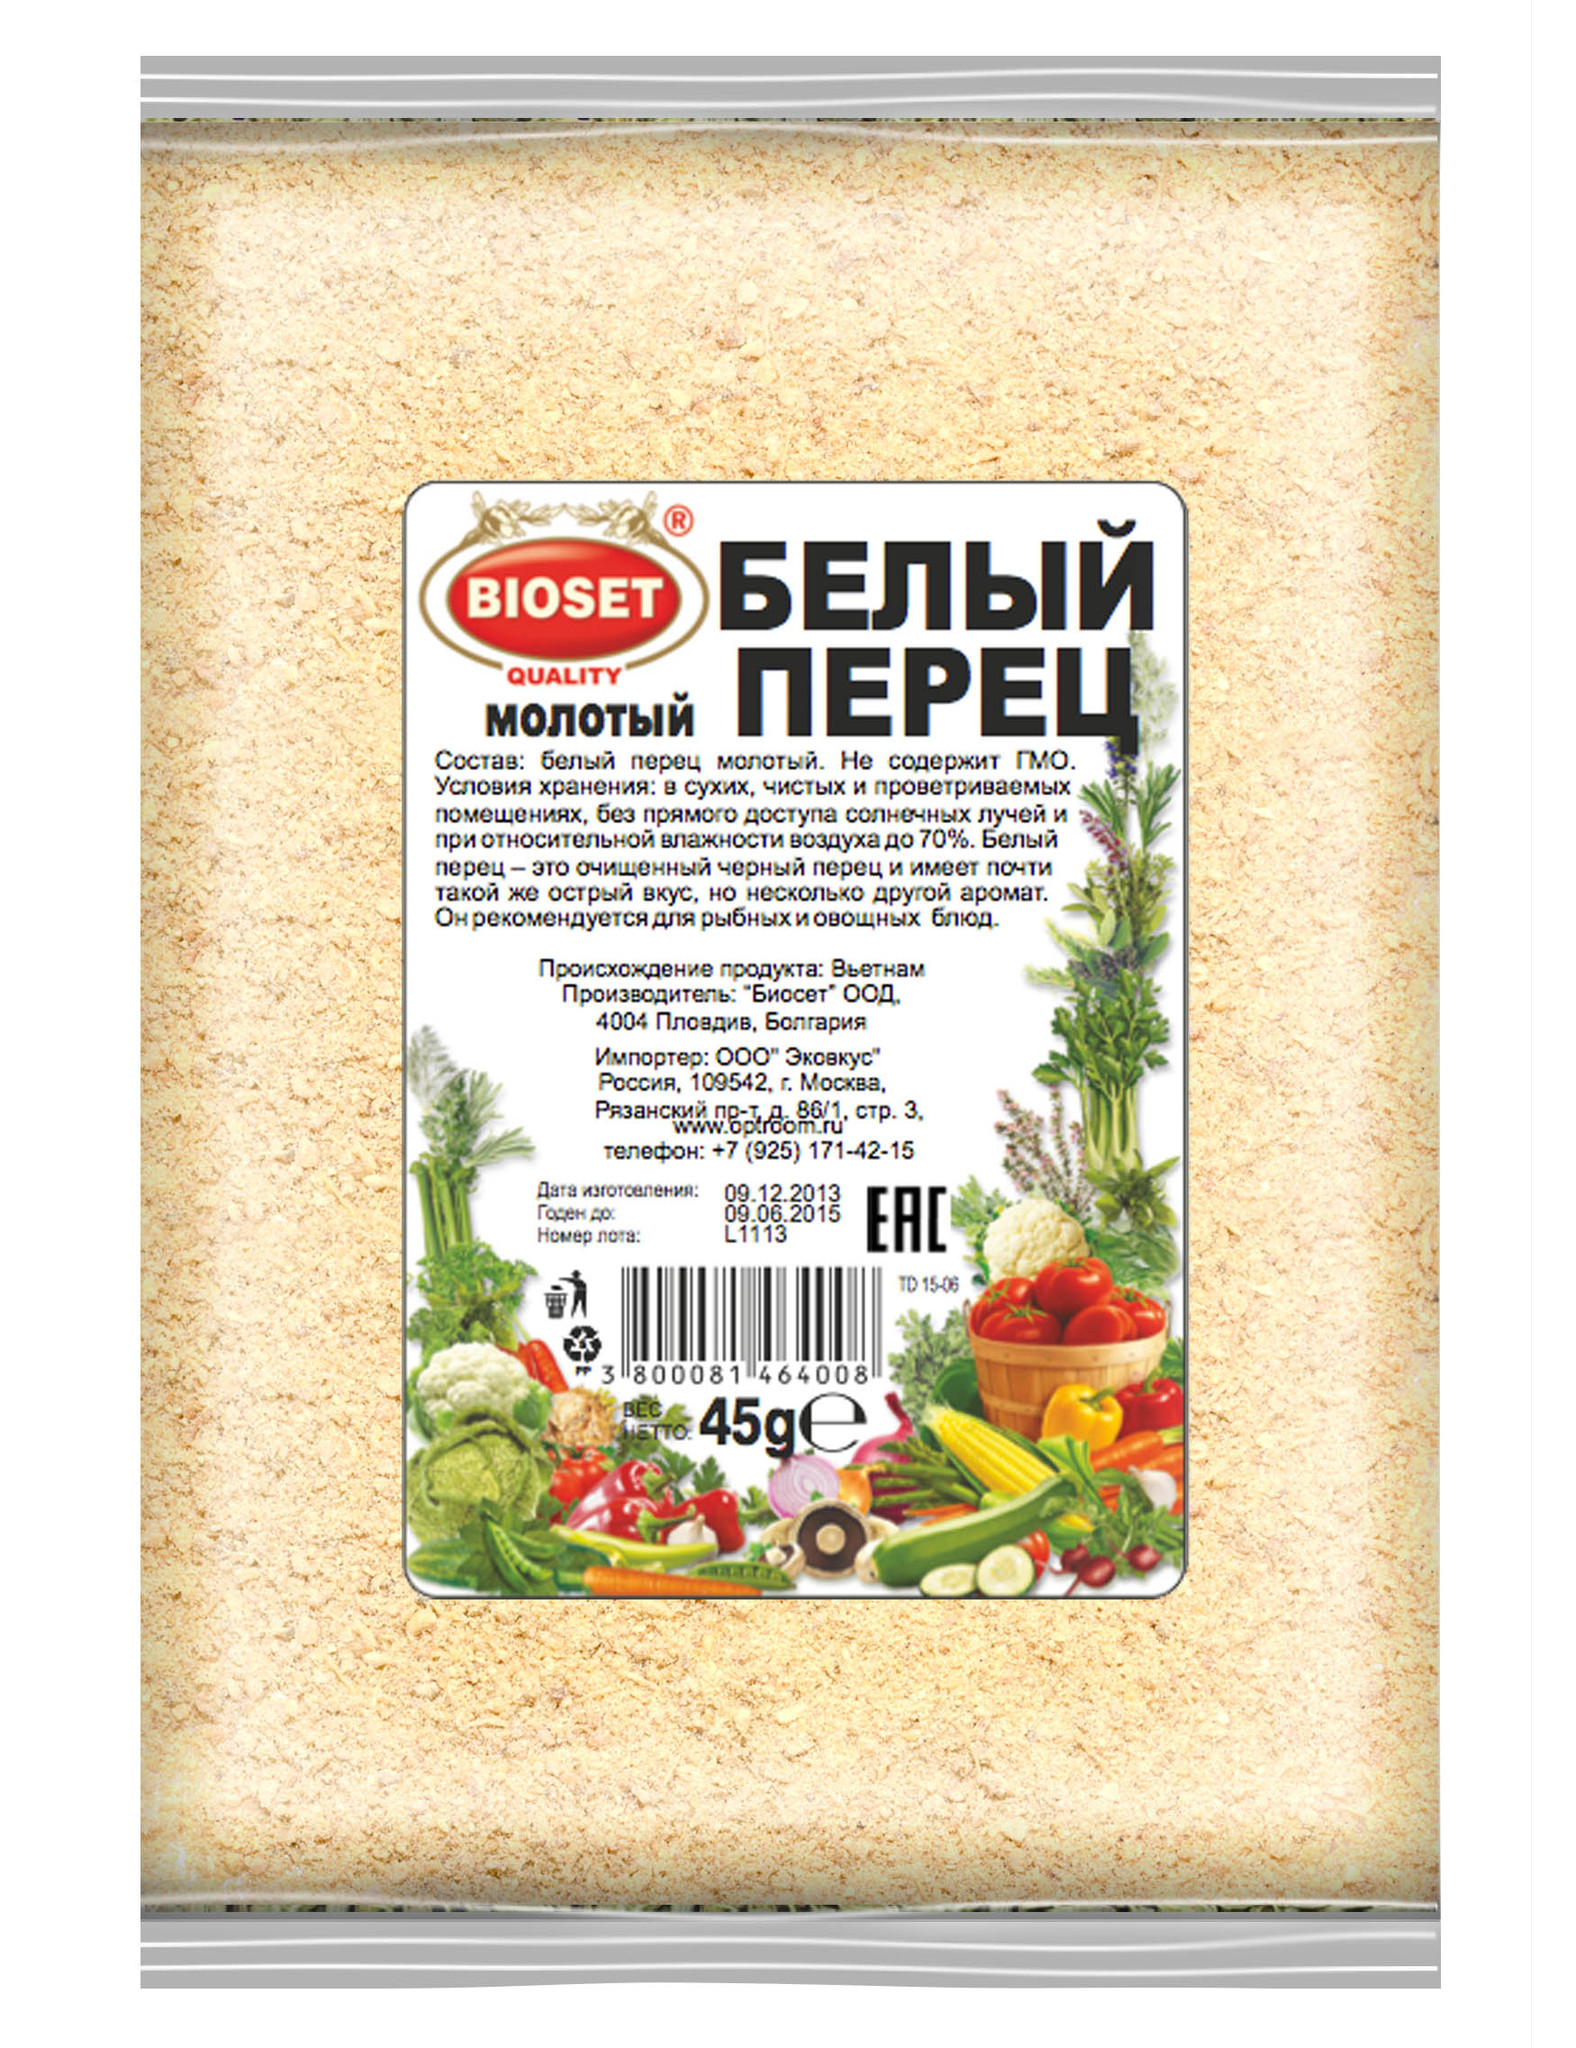 Перец белый молотый 1 кг. - купить по выгодной цене | Мир Болгарии